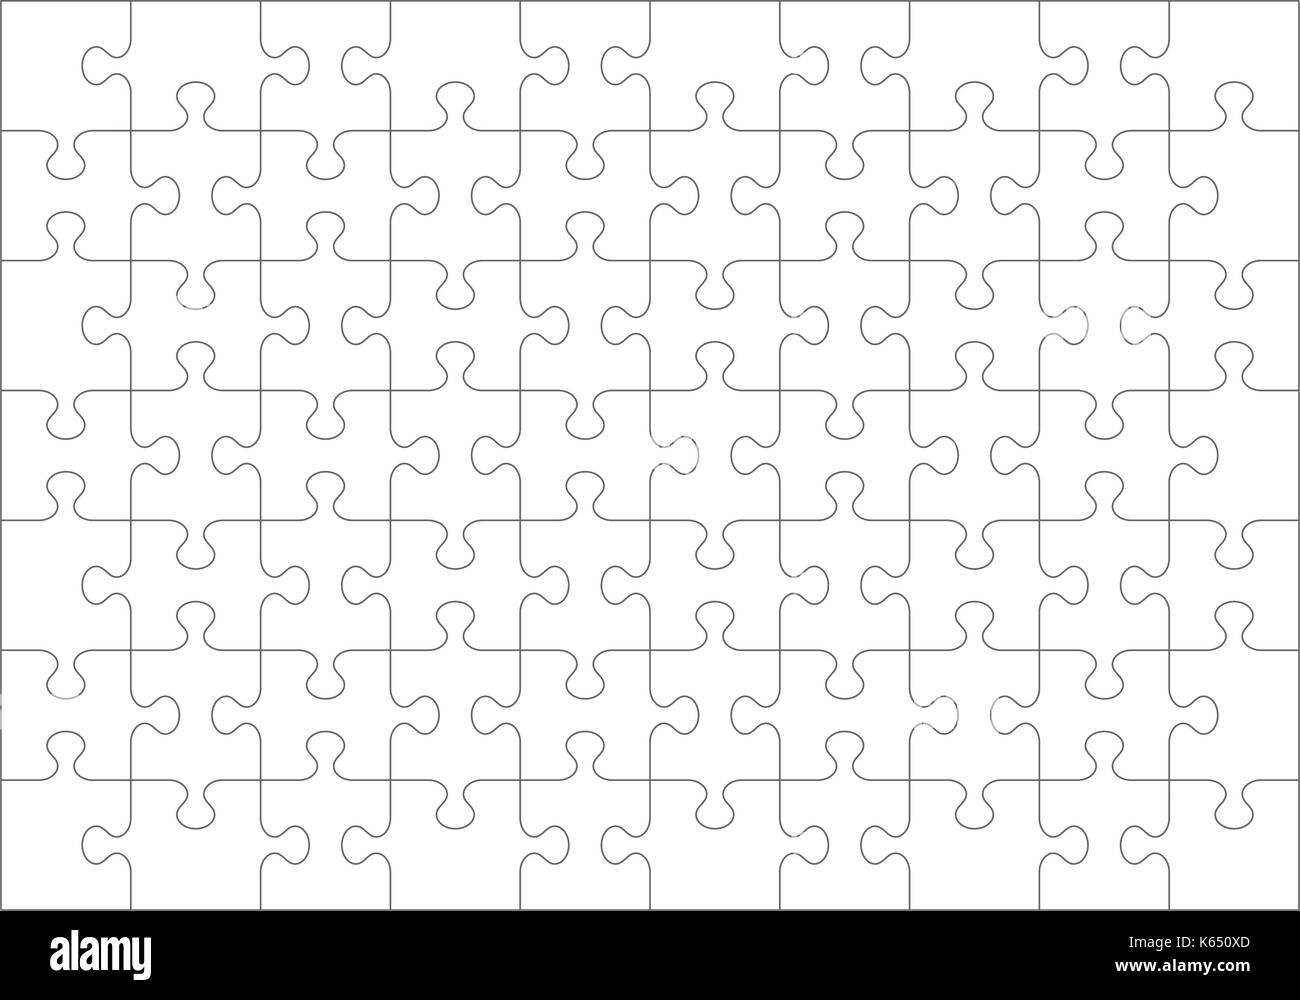 Jigsaw Puzzle blank template o linee guida di taglio di 70 pezzi trasparente.  stile classico pezzi sono facili da separare (ogni pezzo è una forma  singola Immagine e Vettoriale - Alamy